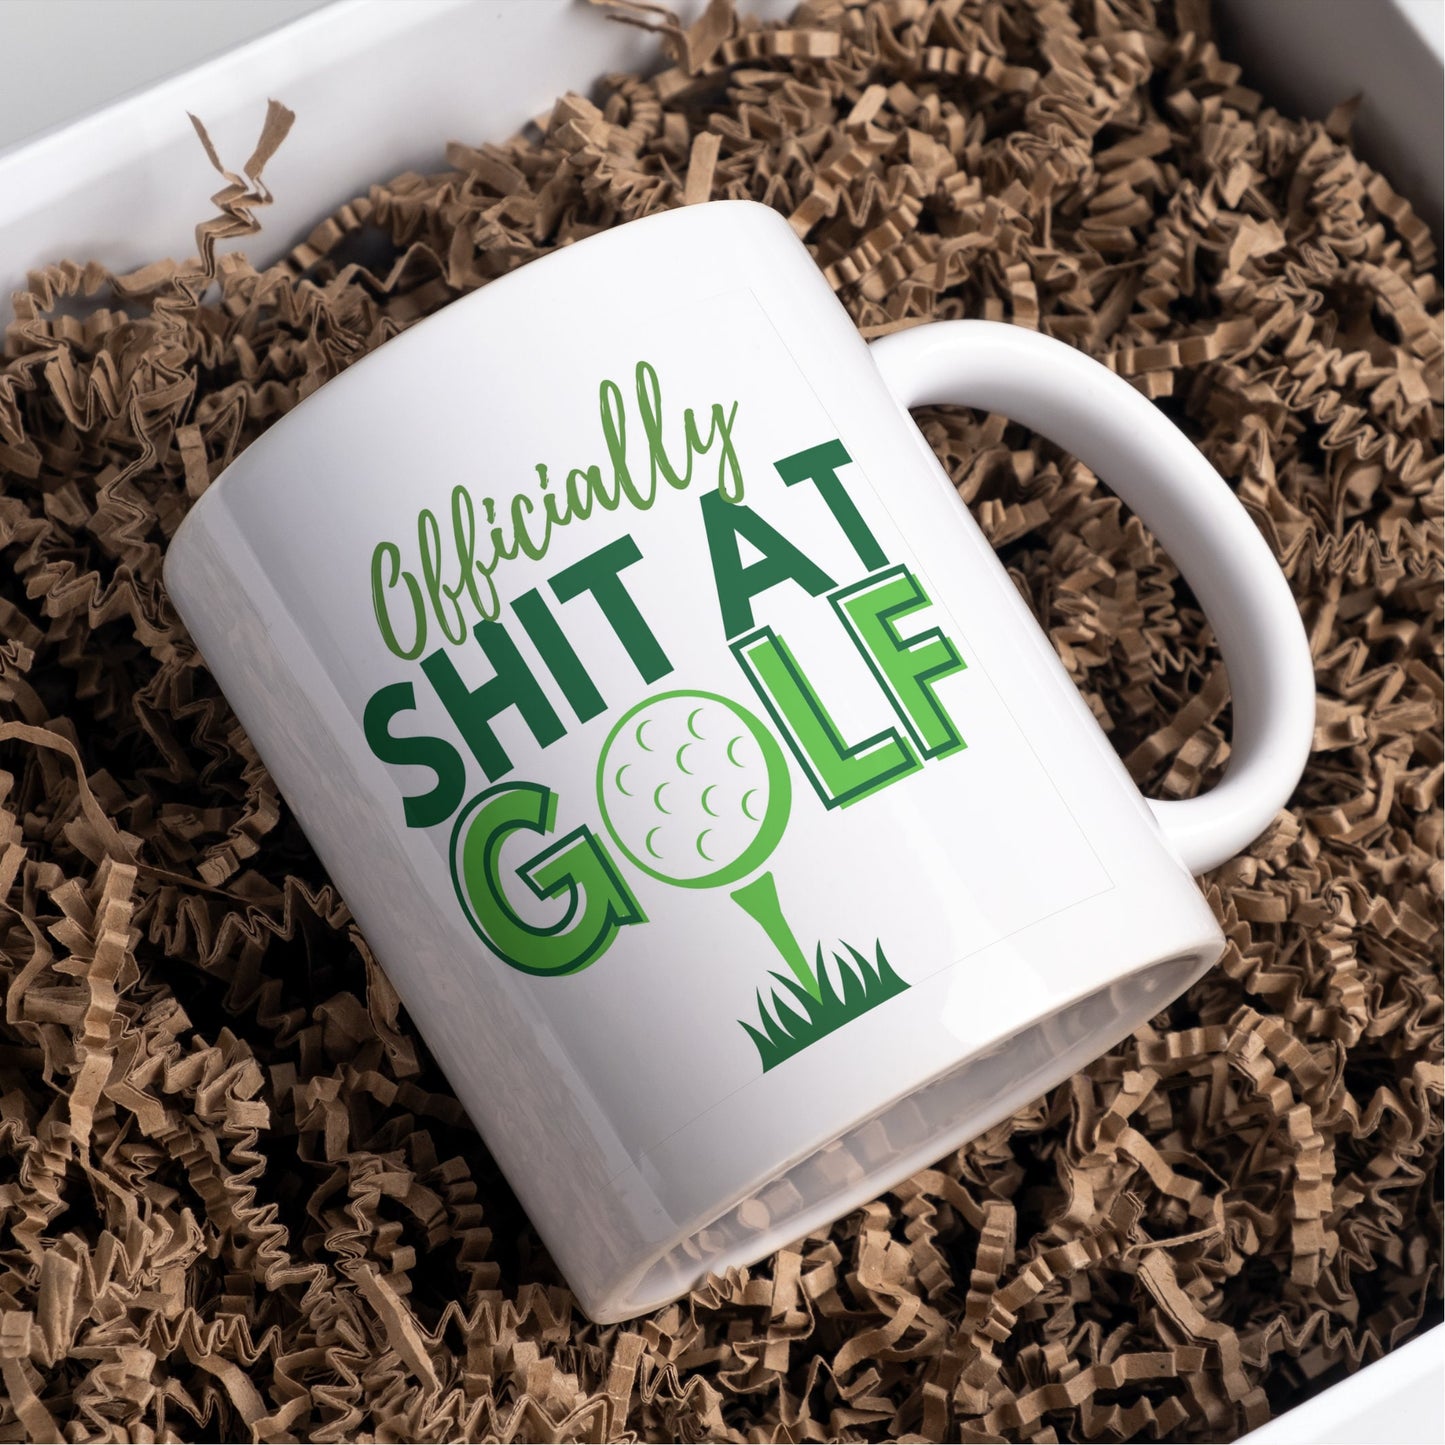 Officially Shit at Golf funny mug